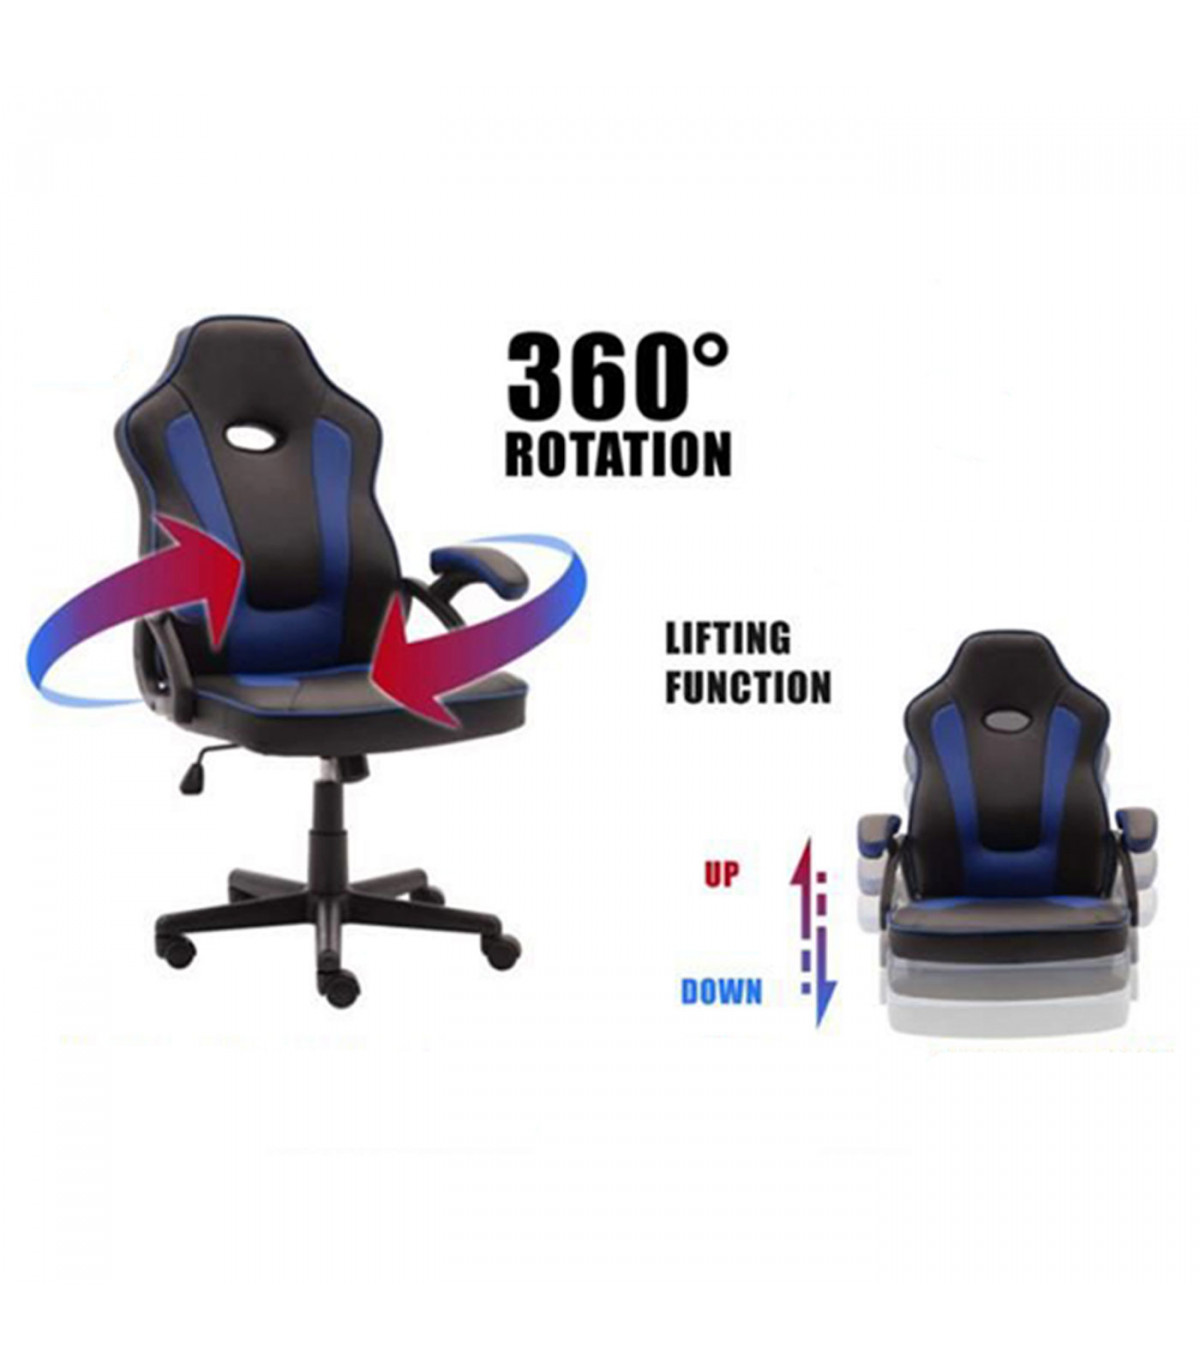 Silla gaming de cuero sintético, ergonómica, negro y azul, silla